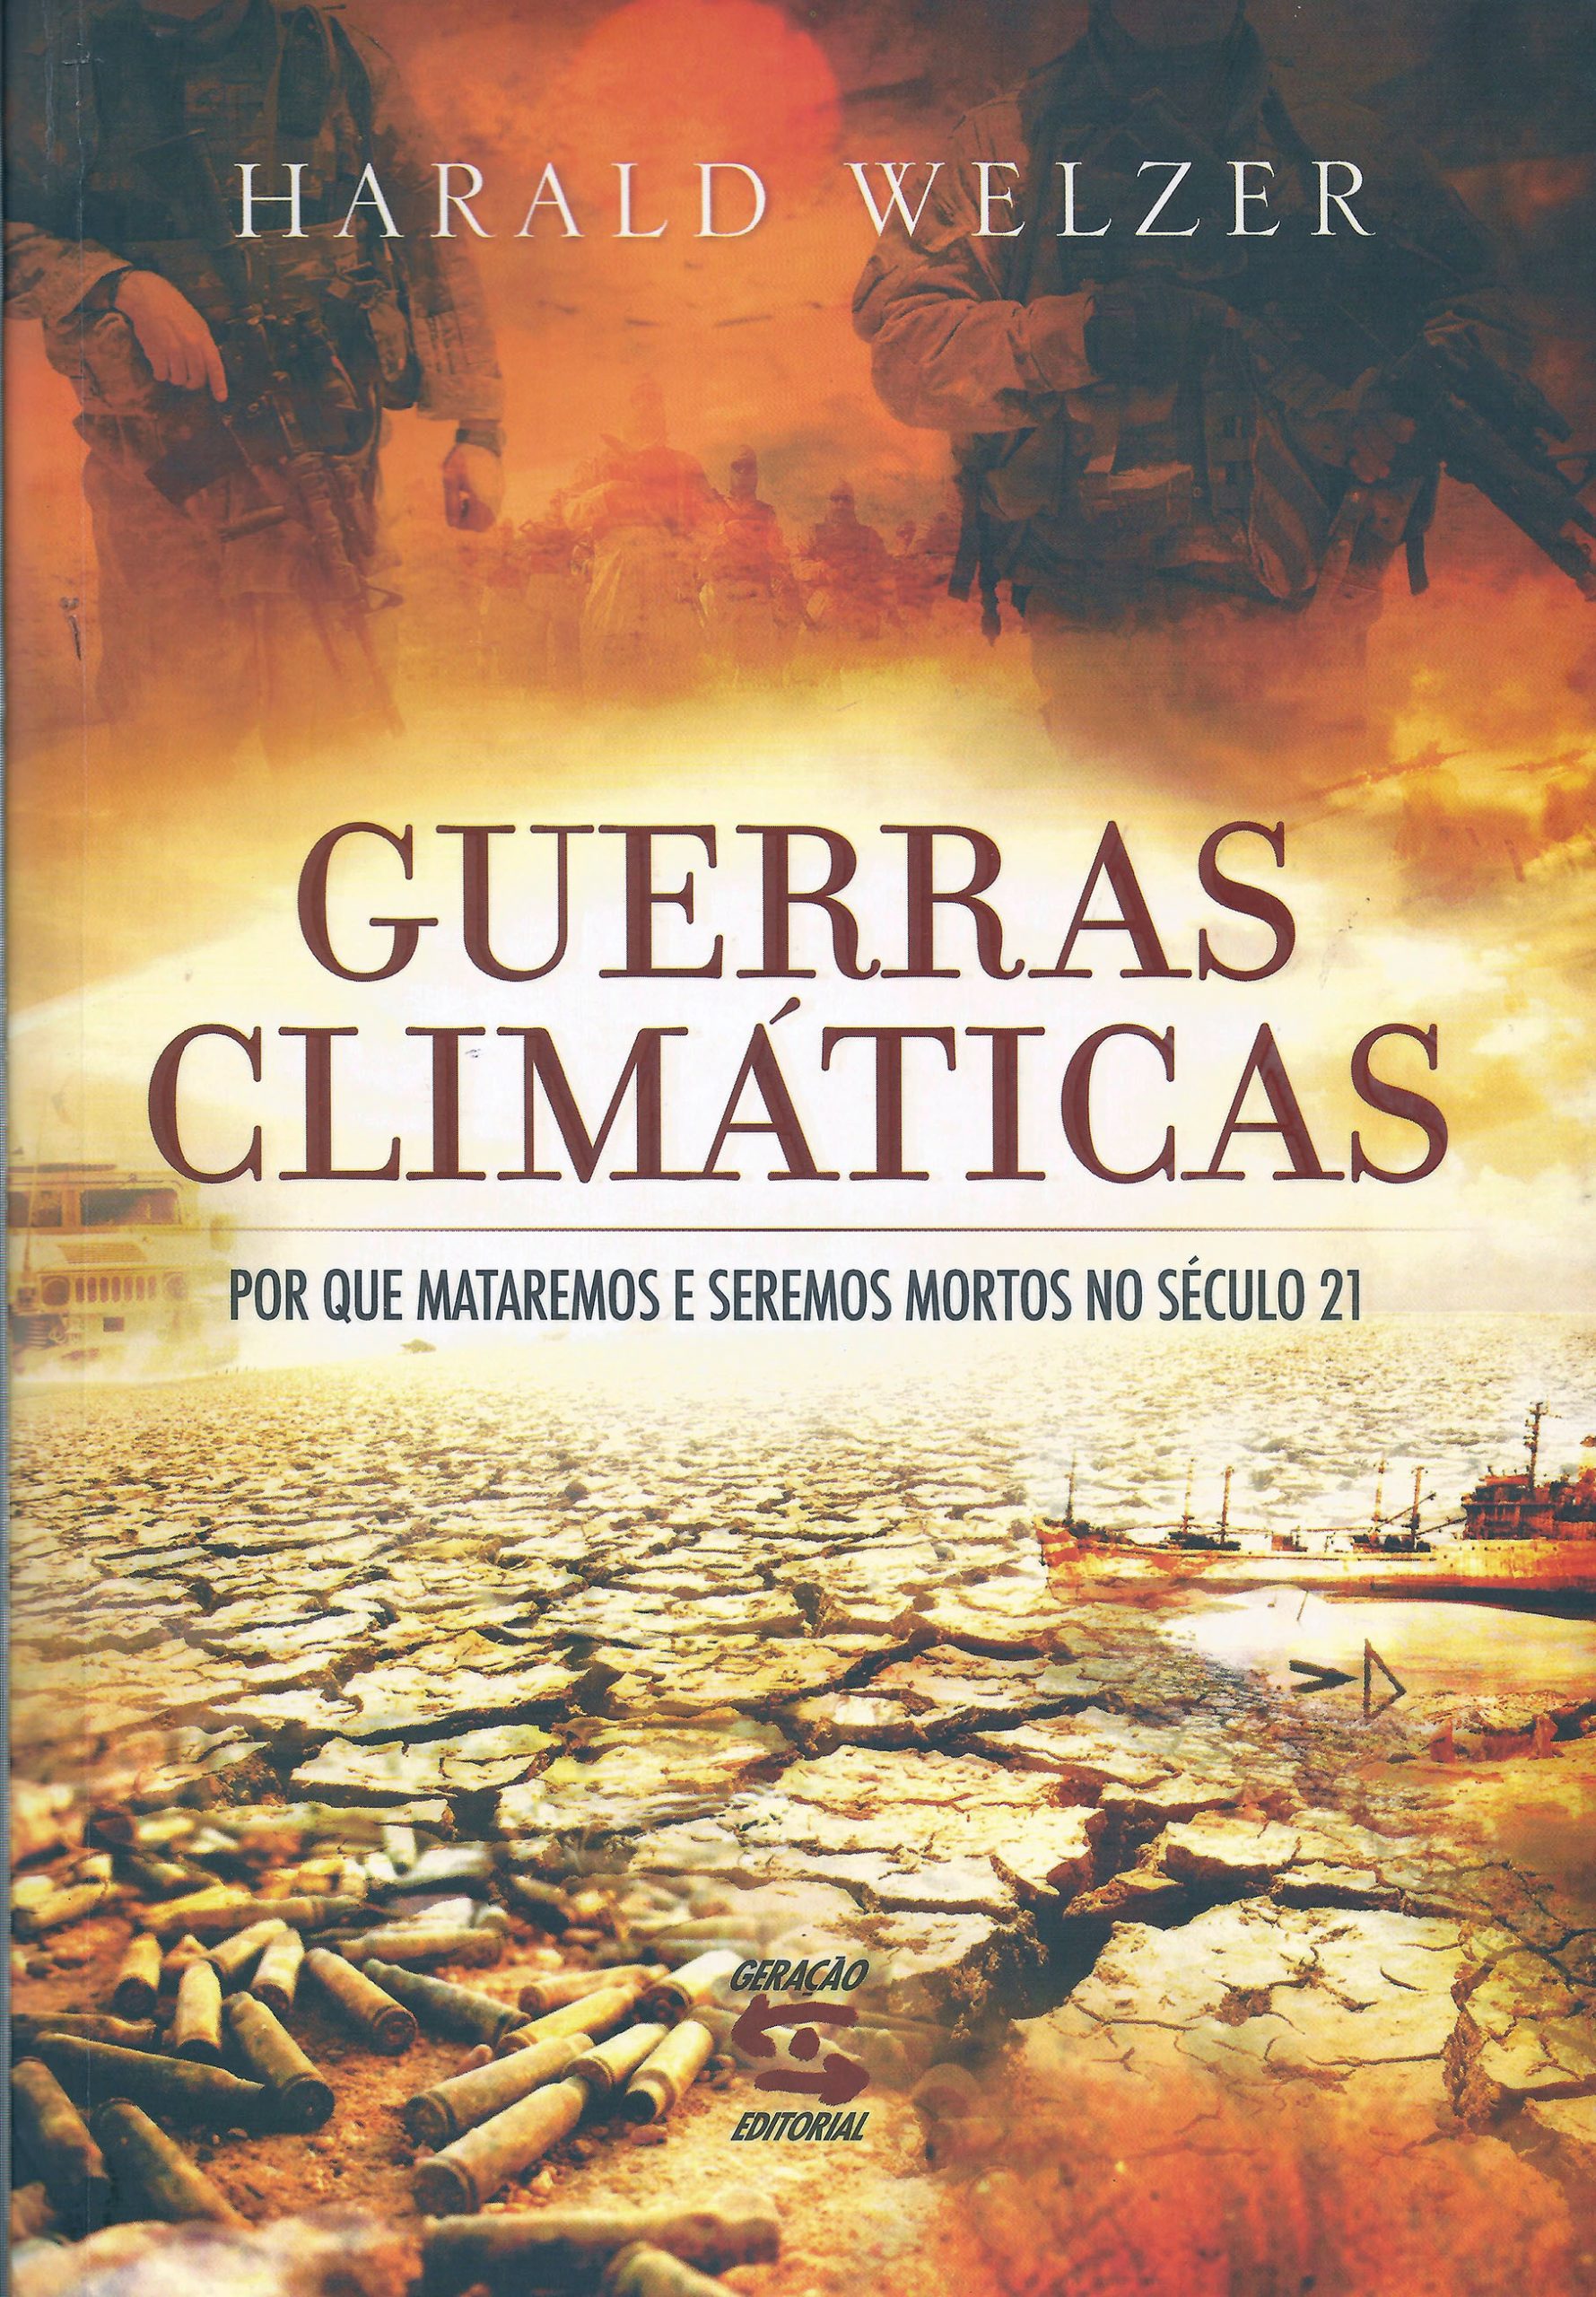 Resumo do livro Guerras Climáticas – Por Que Mataremos e Seremos Mortos no Século 21